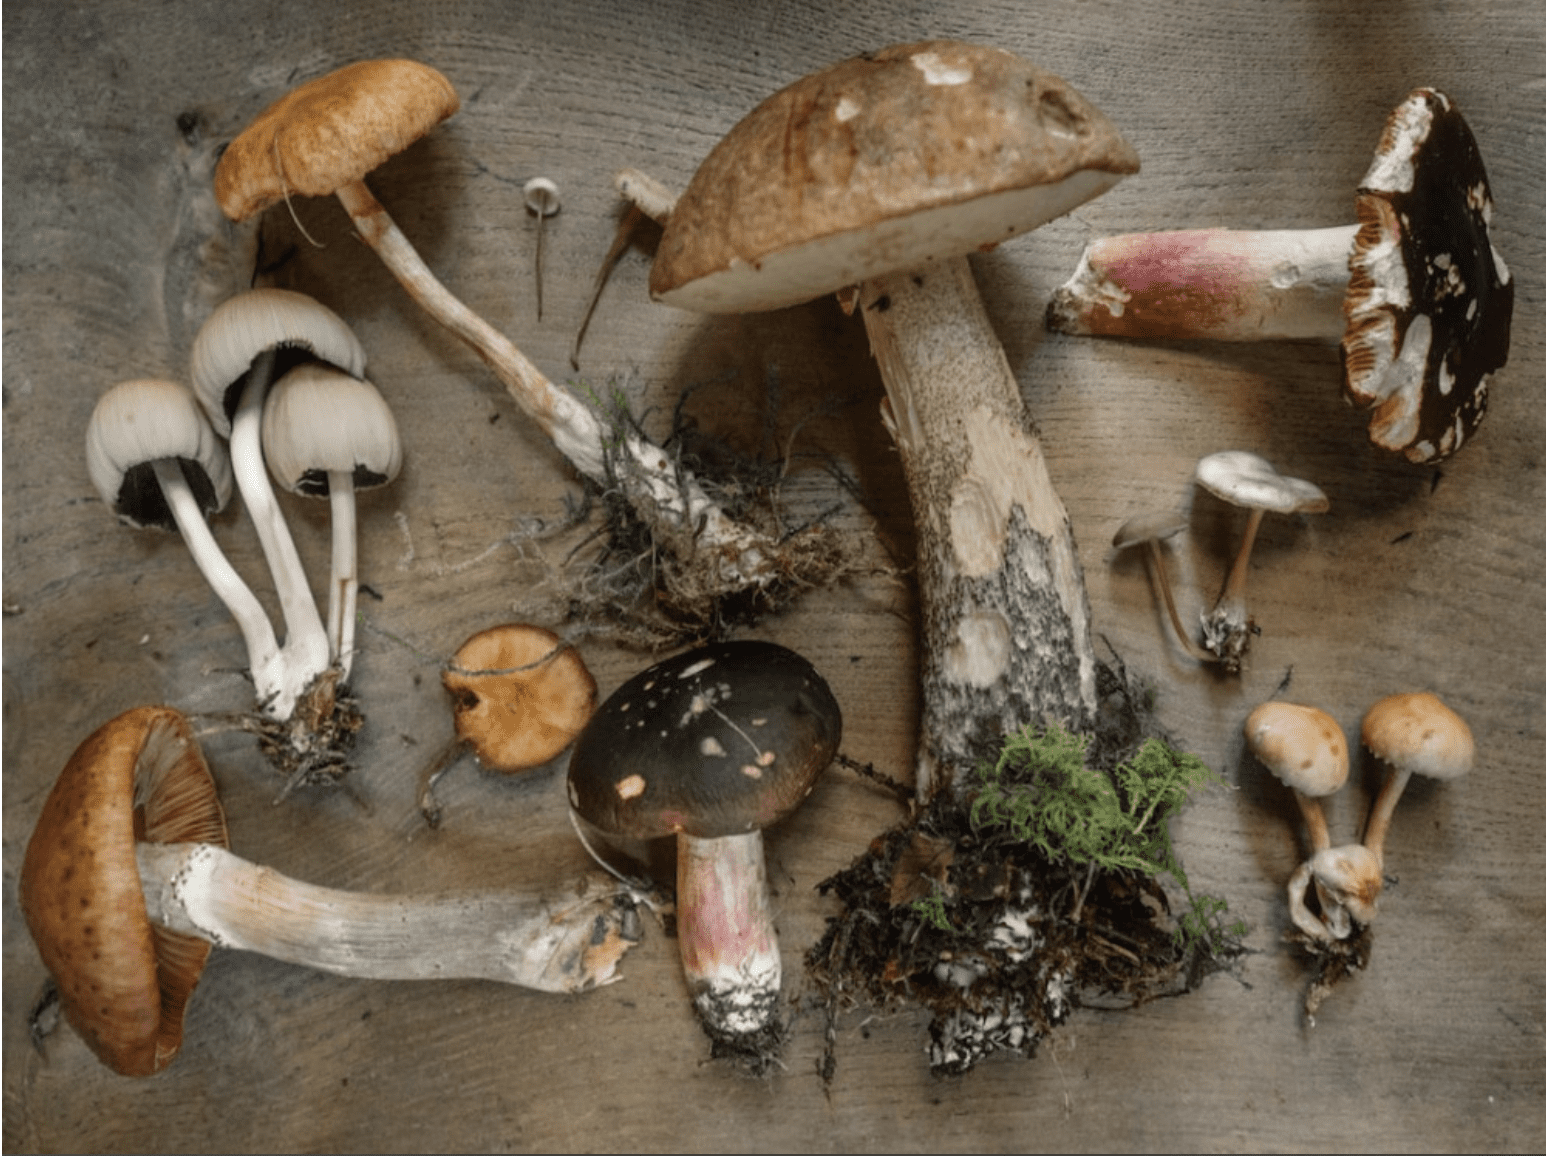 Backyard Mushrooms